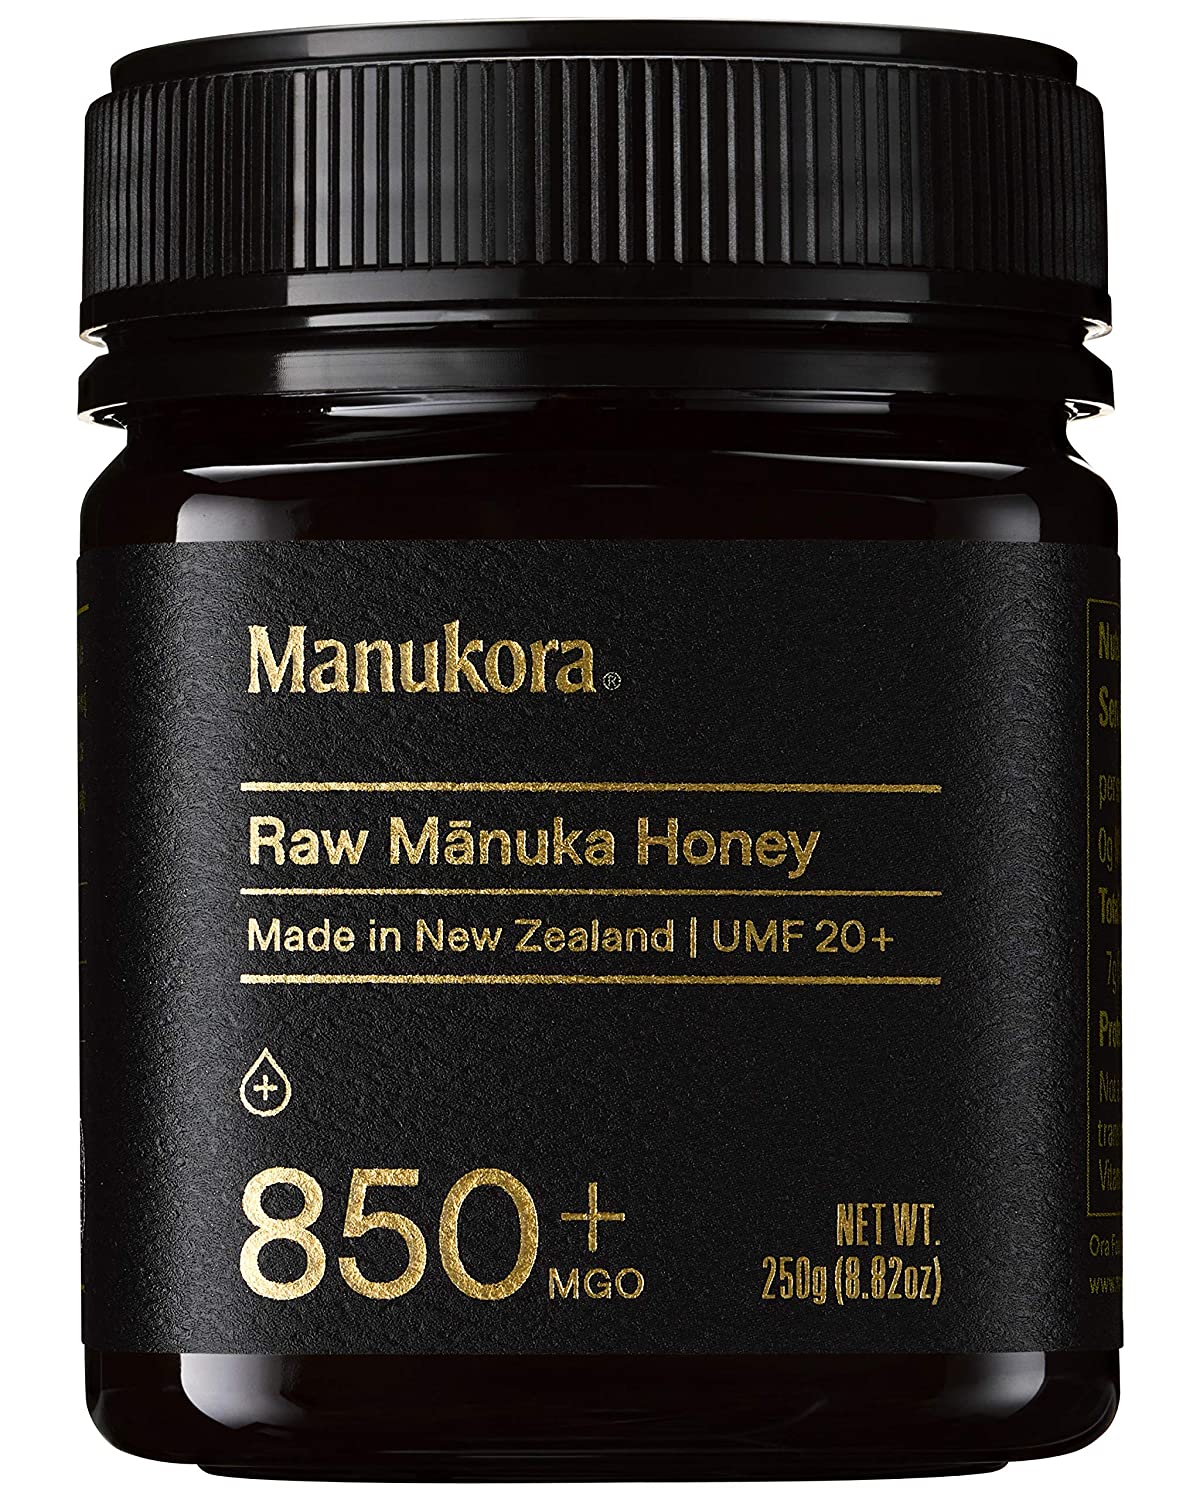 Manukora UMF 20+/MGO 850+ Raw Manuka Honey - 250g/8.8oz